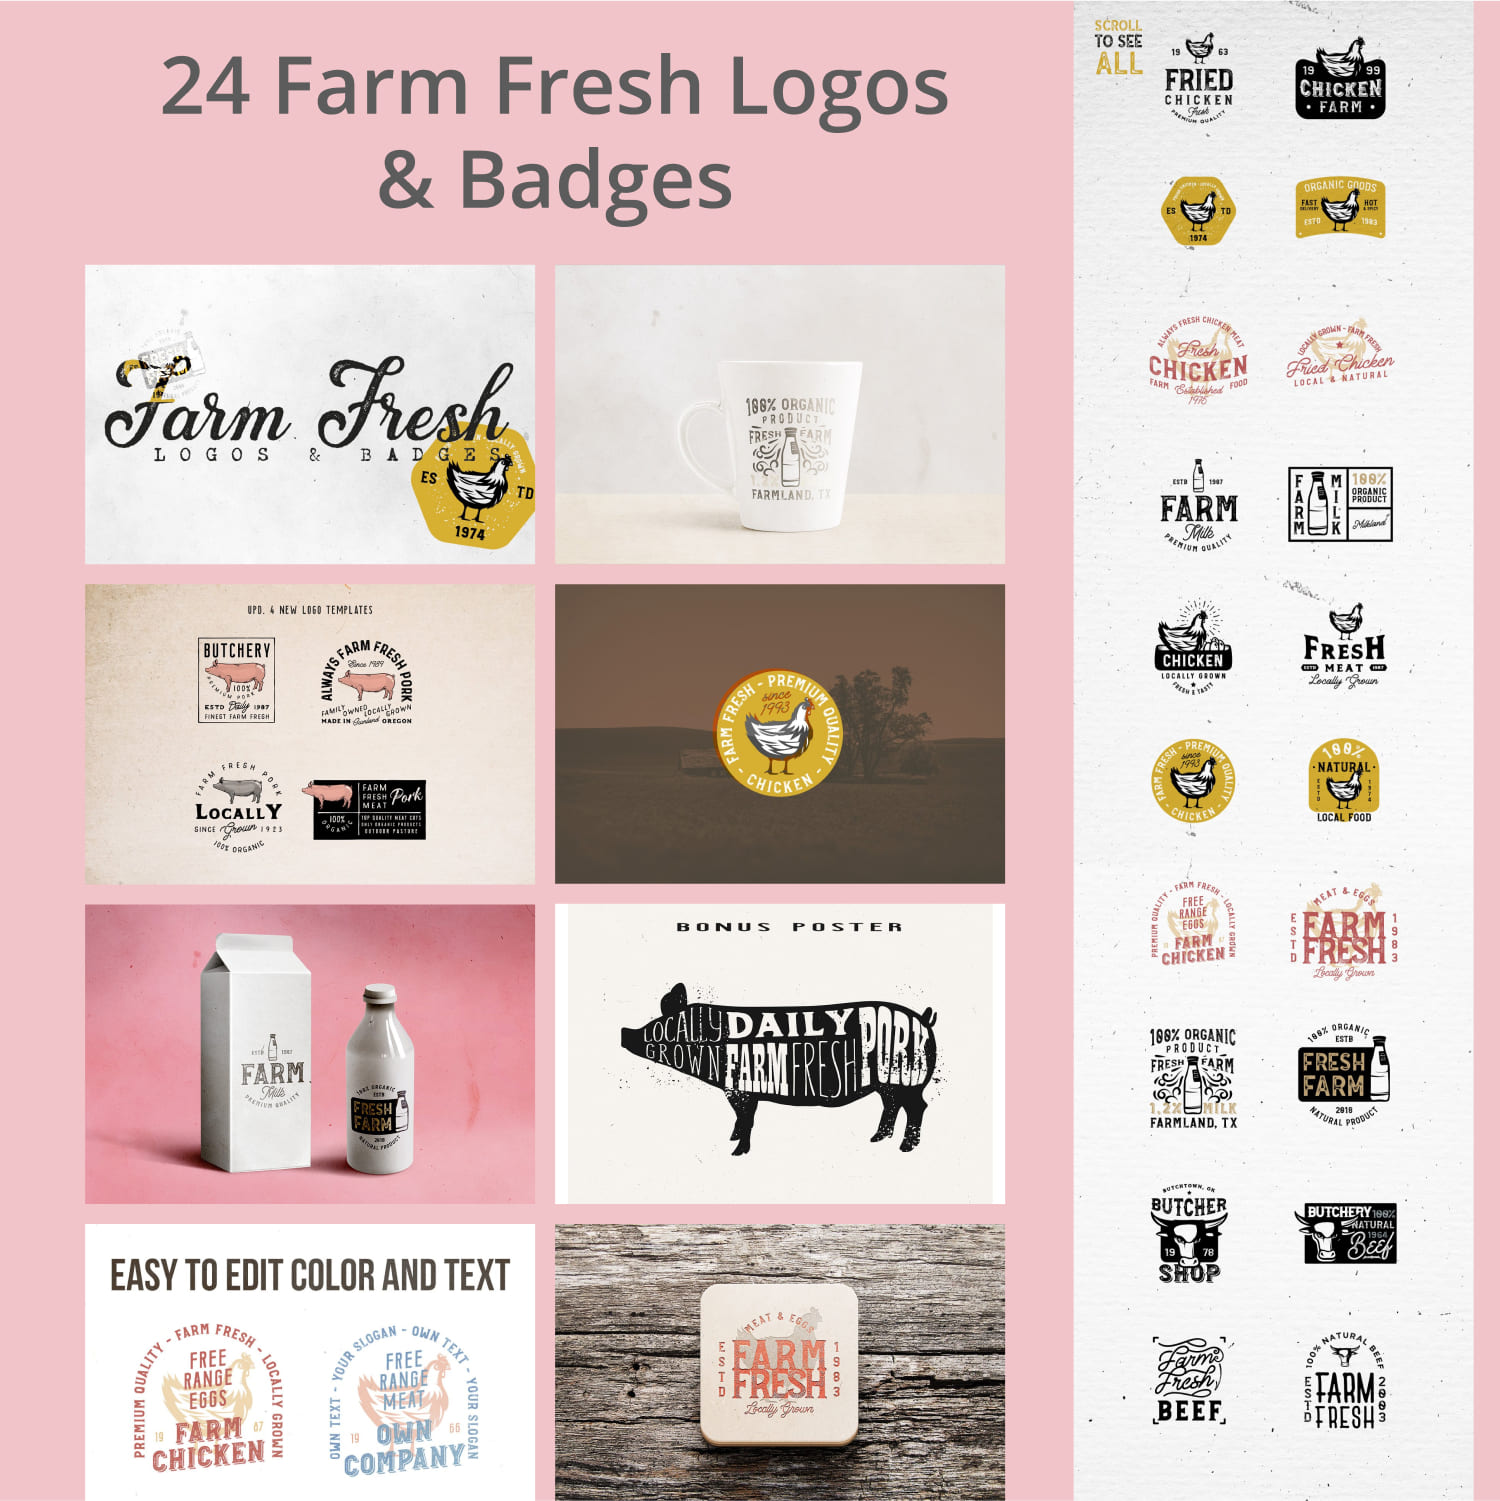 24 FARM FRESH Logos & Badges.